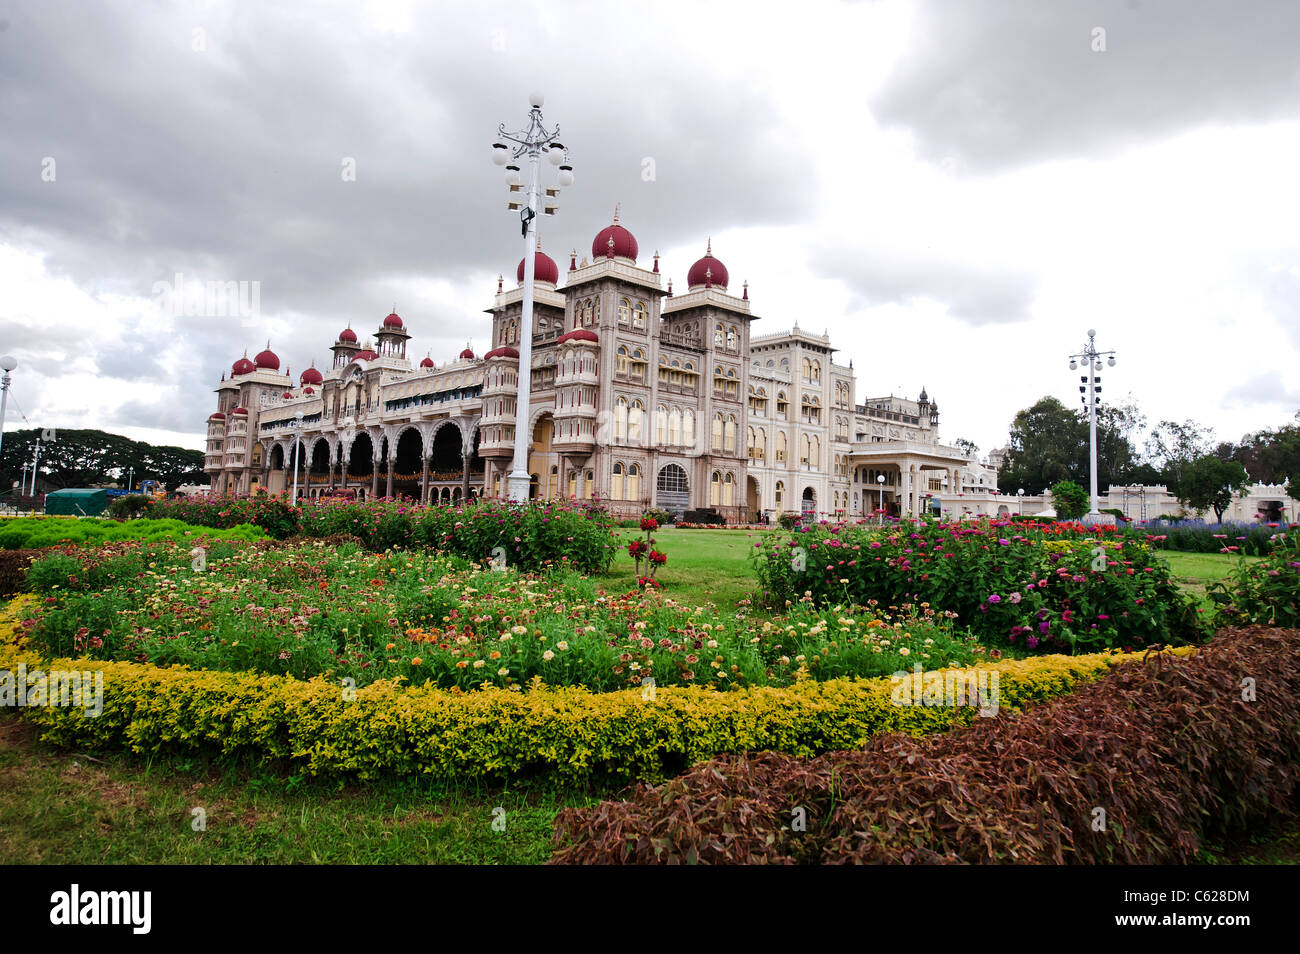 Palacio de Mysore interior rojo,domos,jardín sarracena. Foto de stock